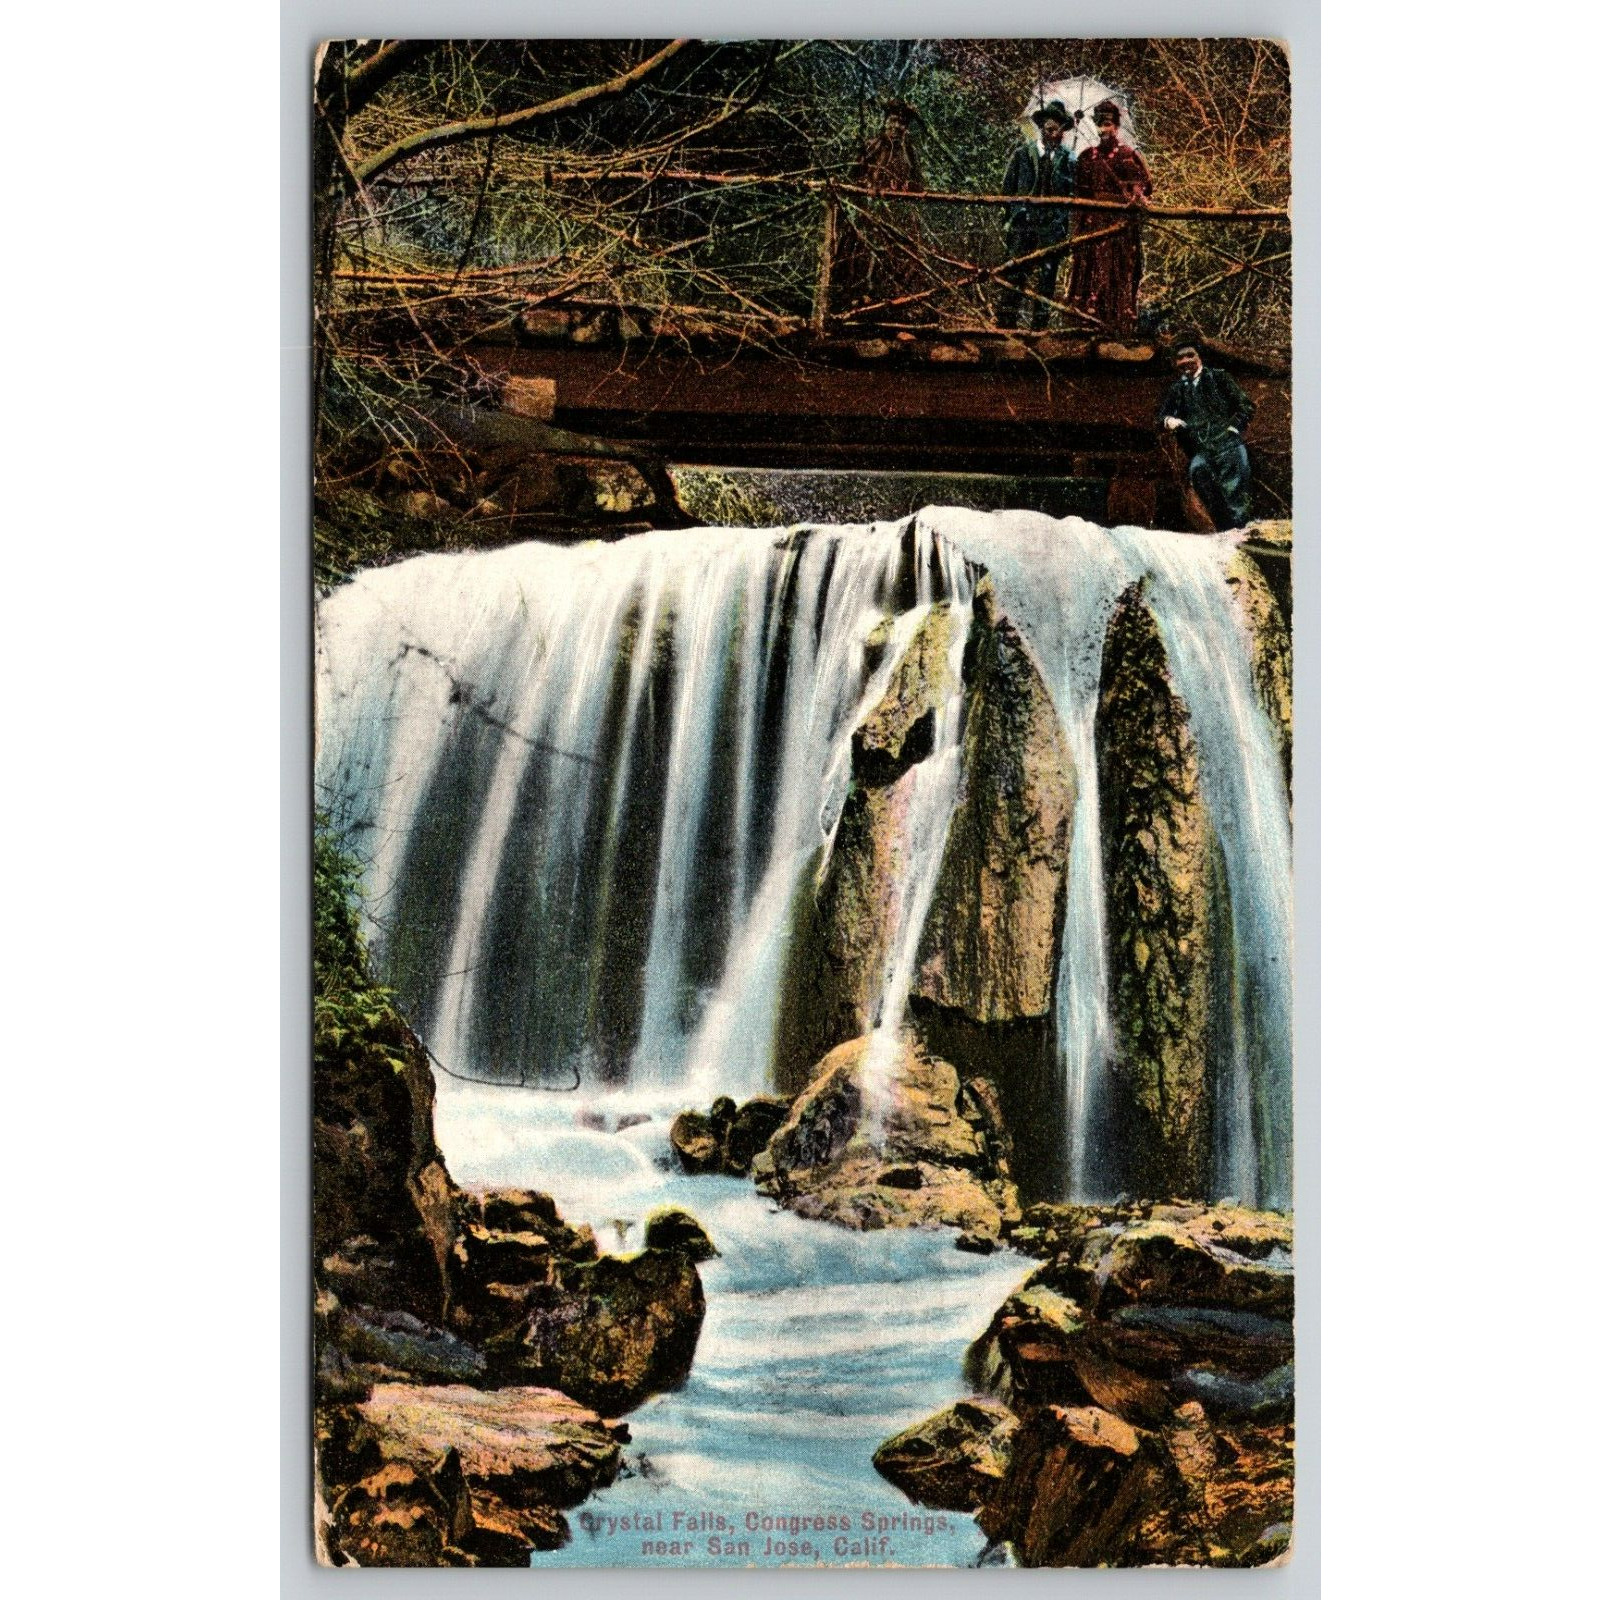 Postcard CA San Jose Crystal Falls Congress Springs